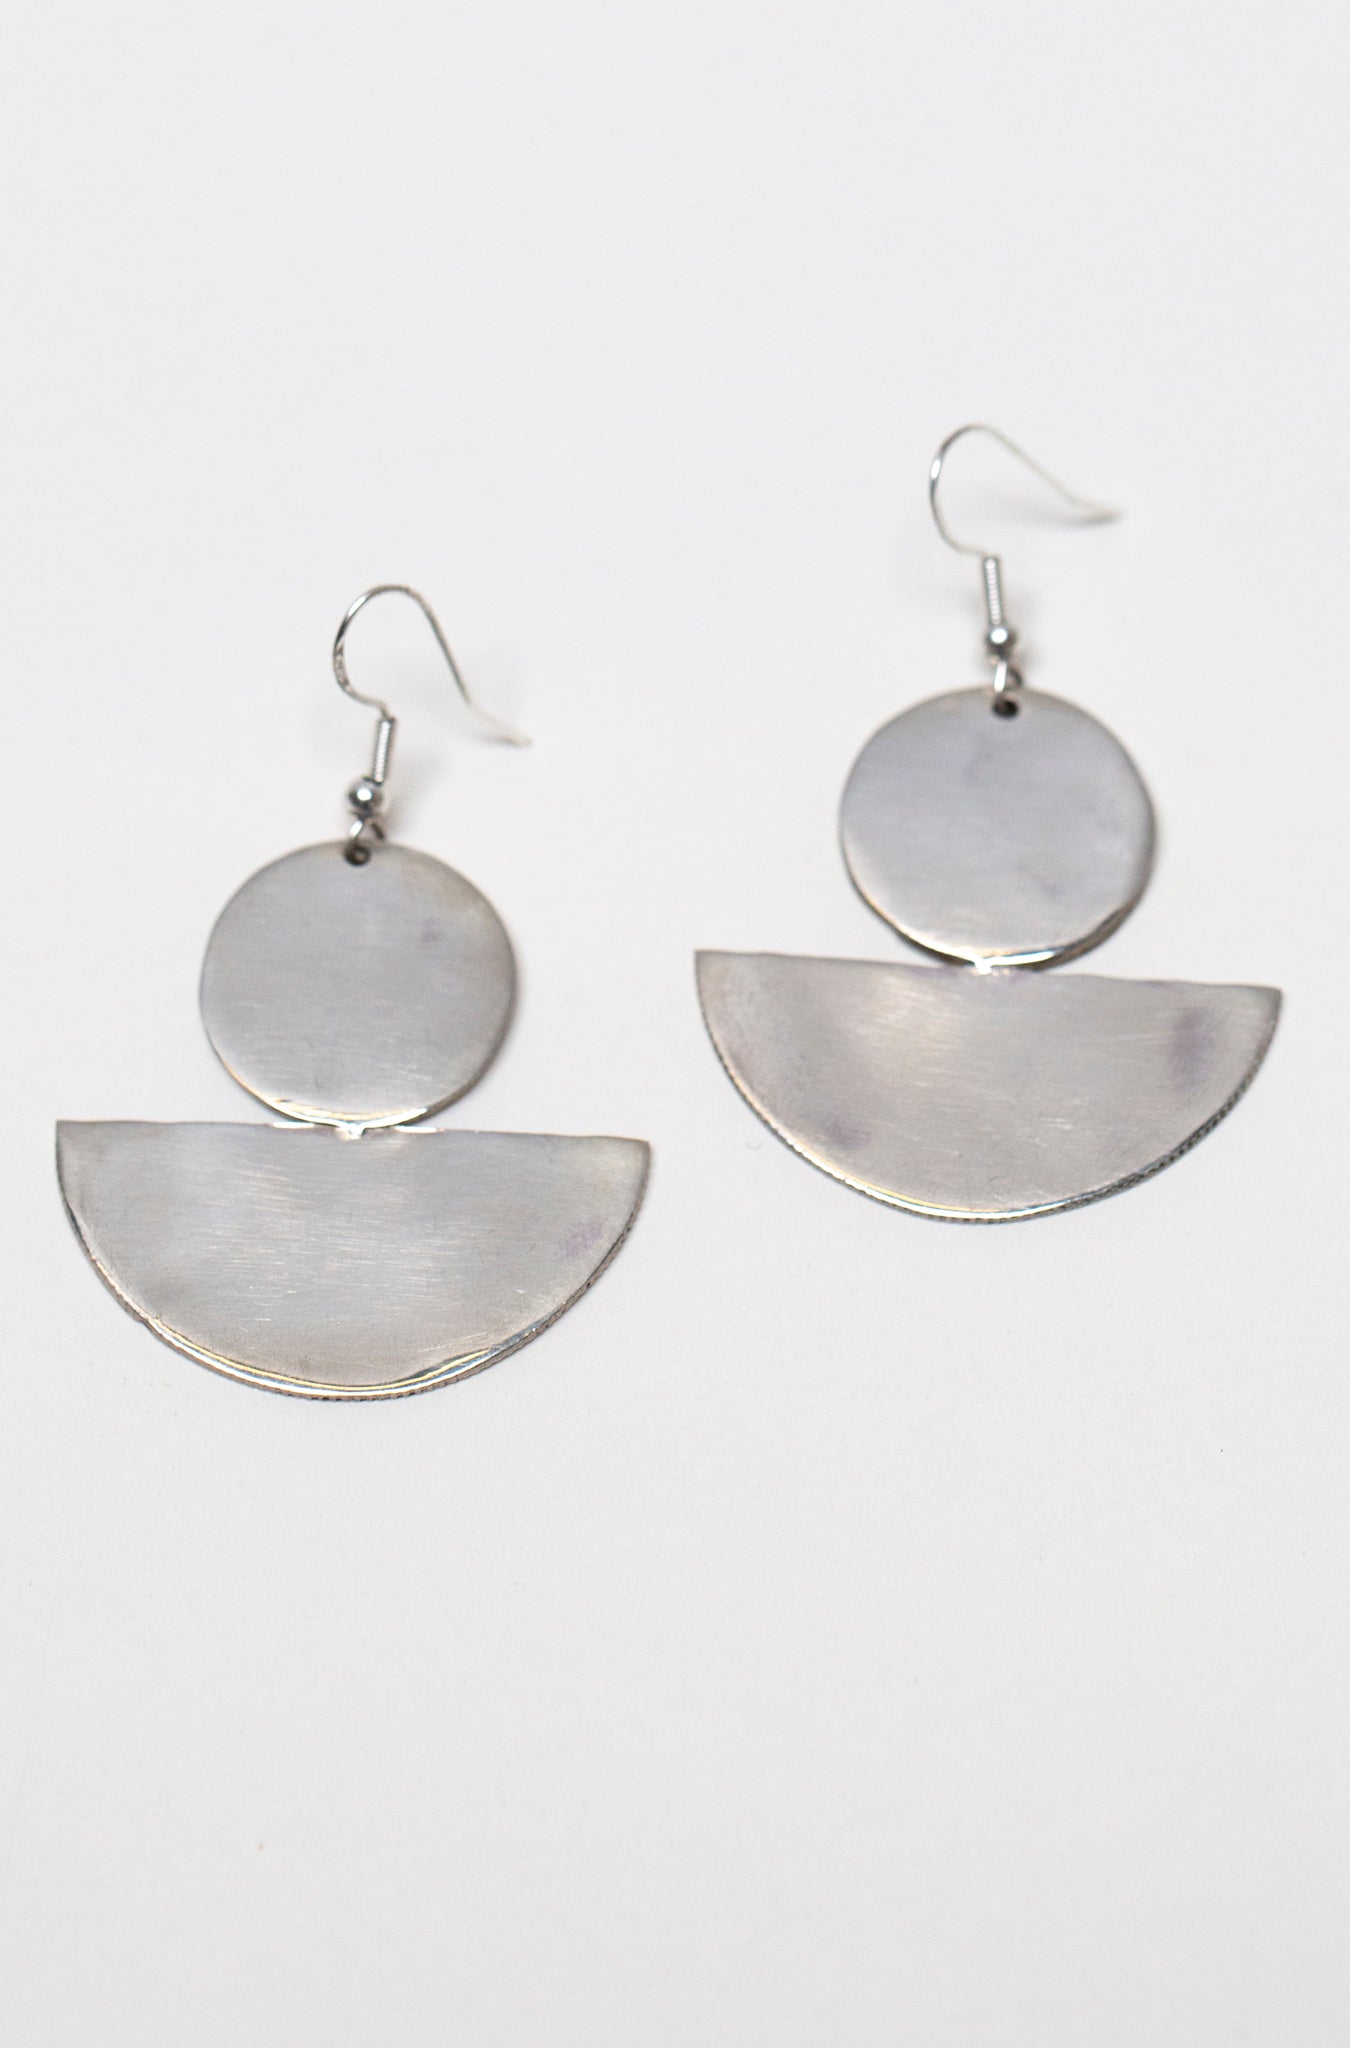 Moon Altar Earrings in Sterling Silver